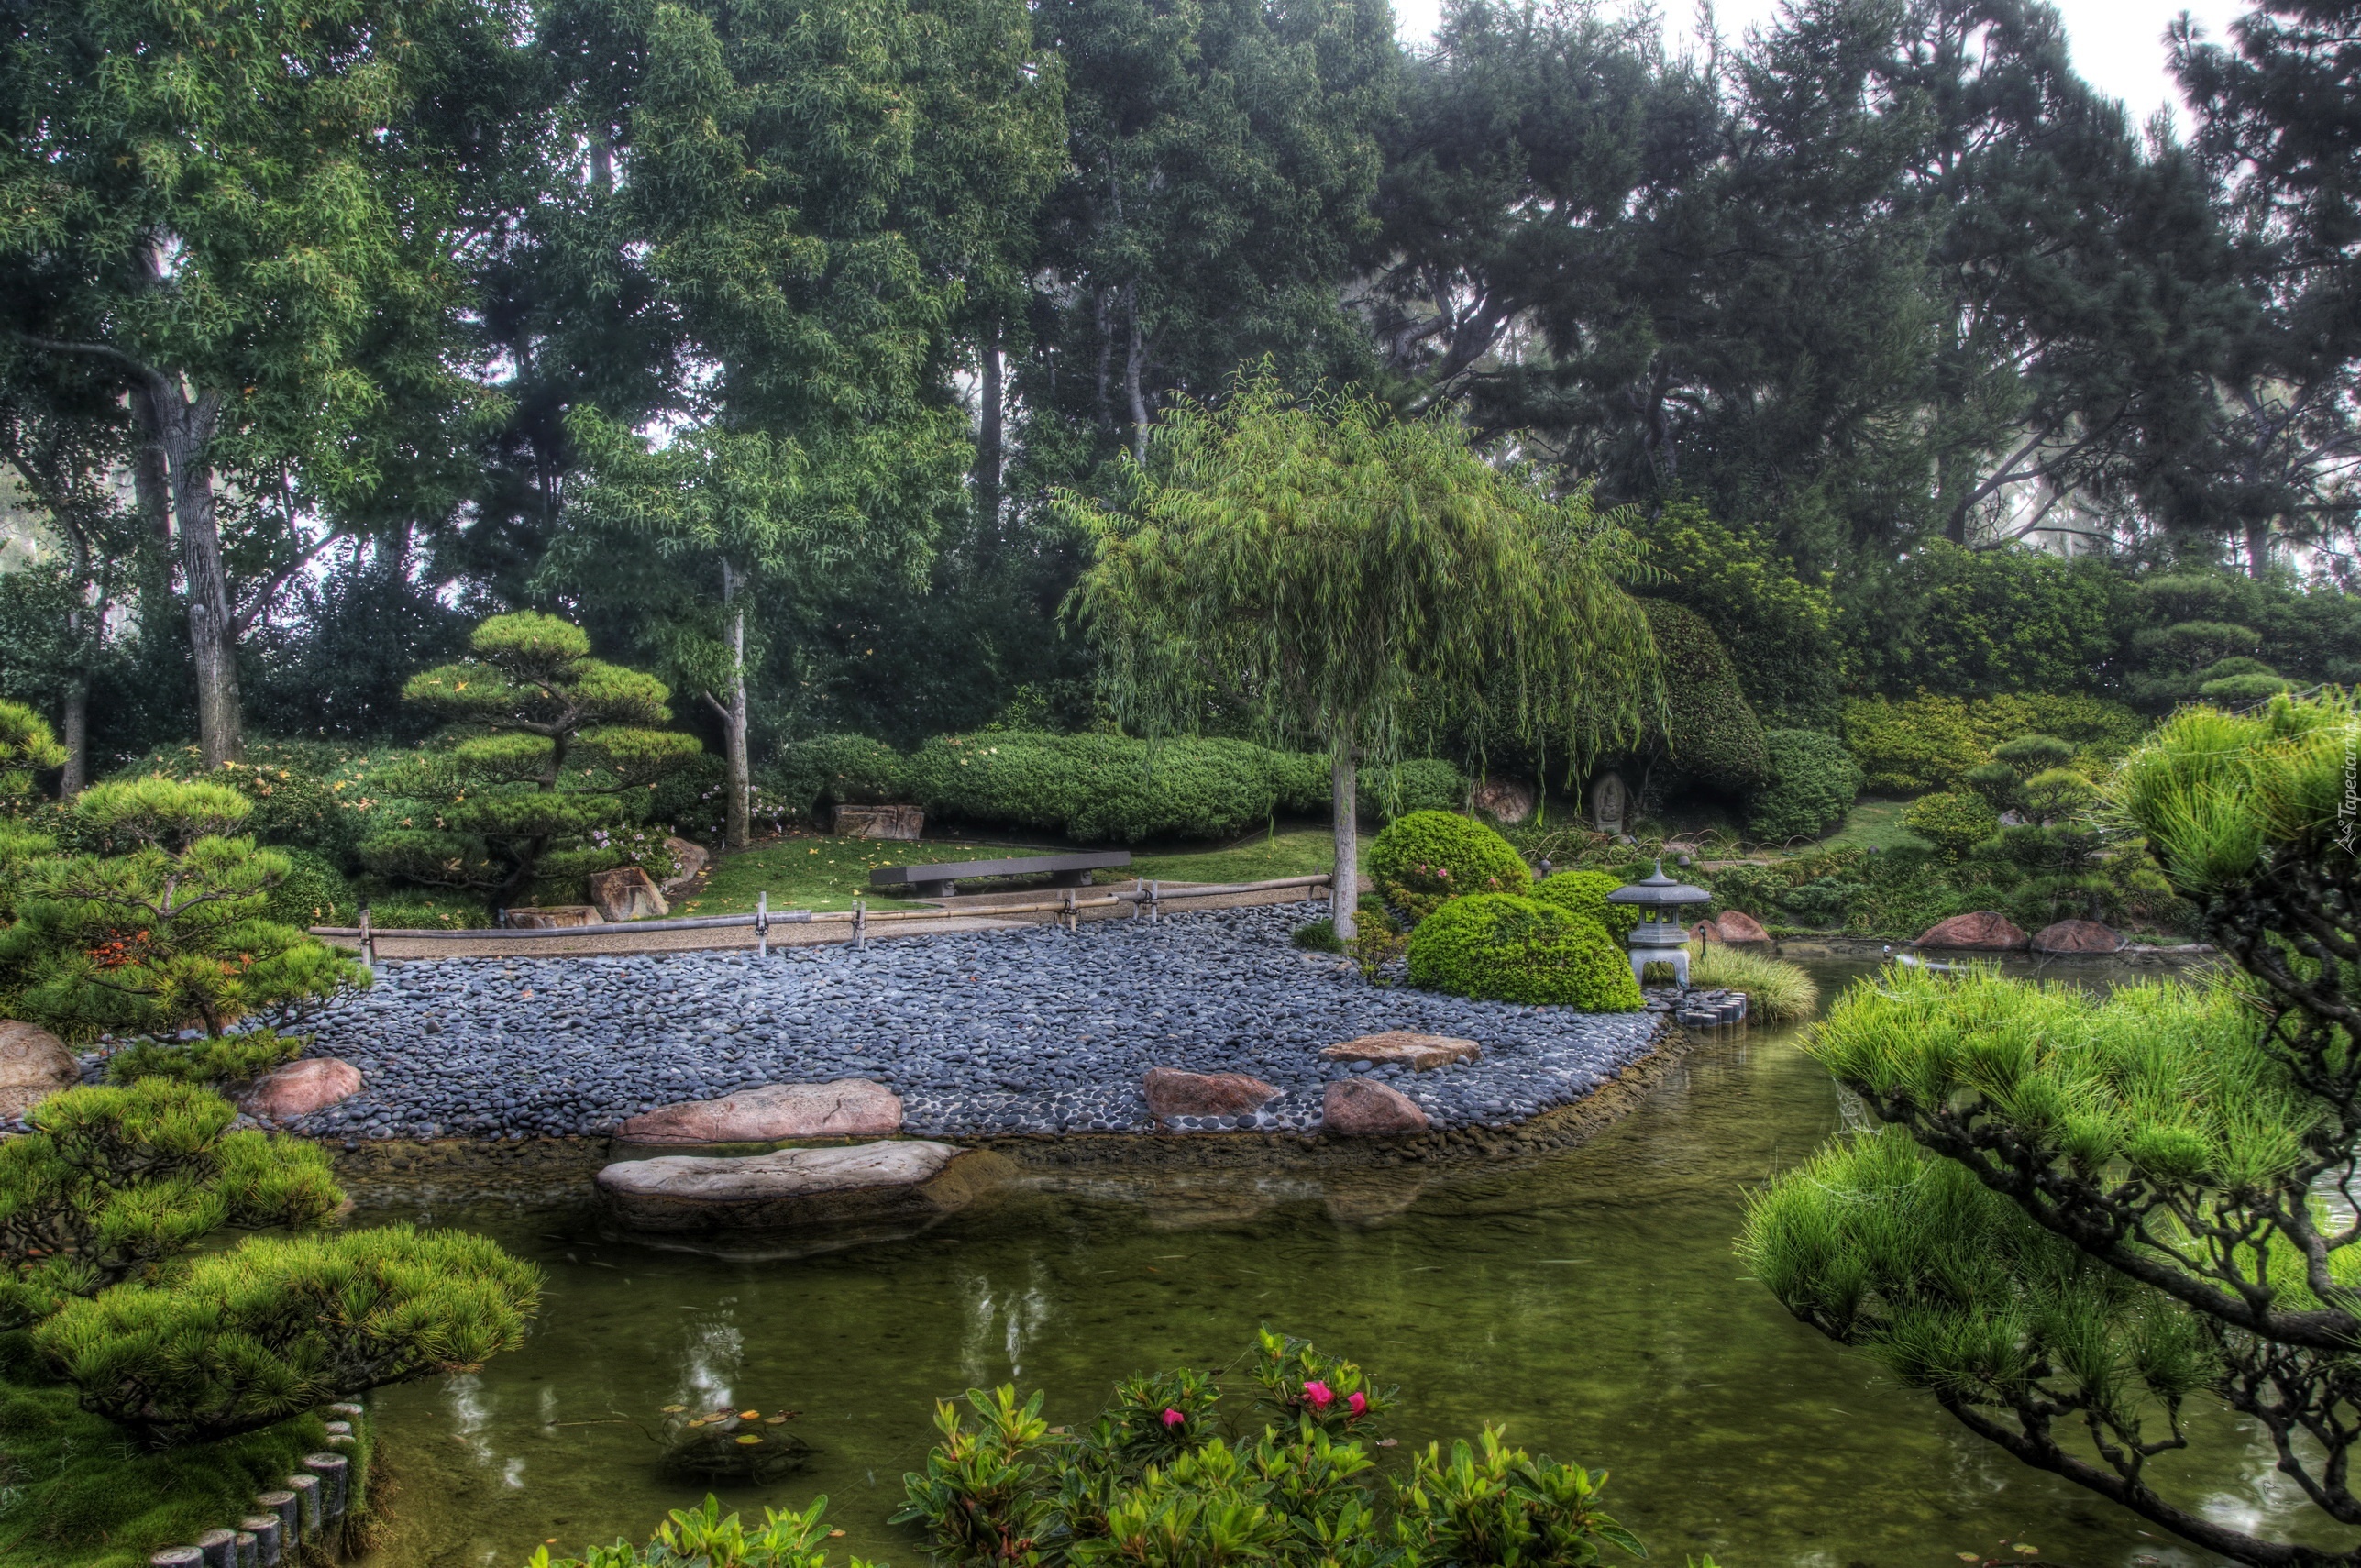 Ogród, Japoński